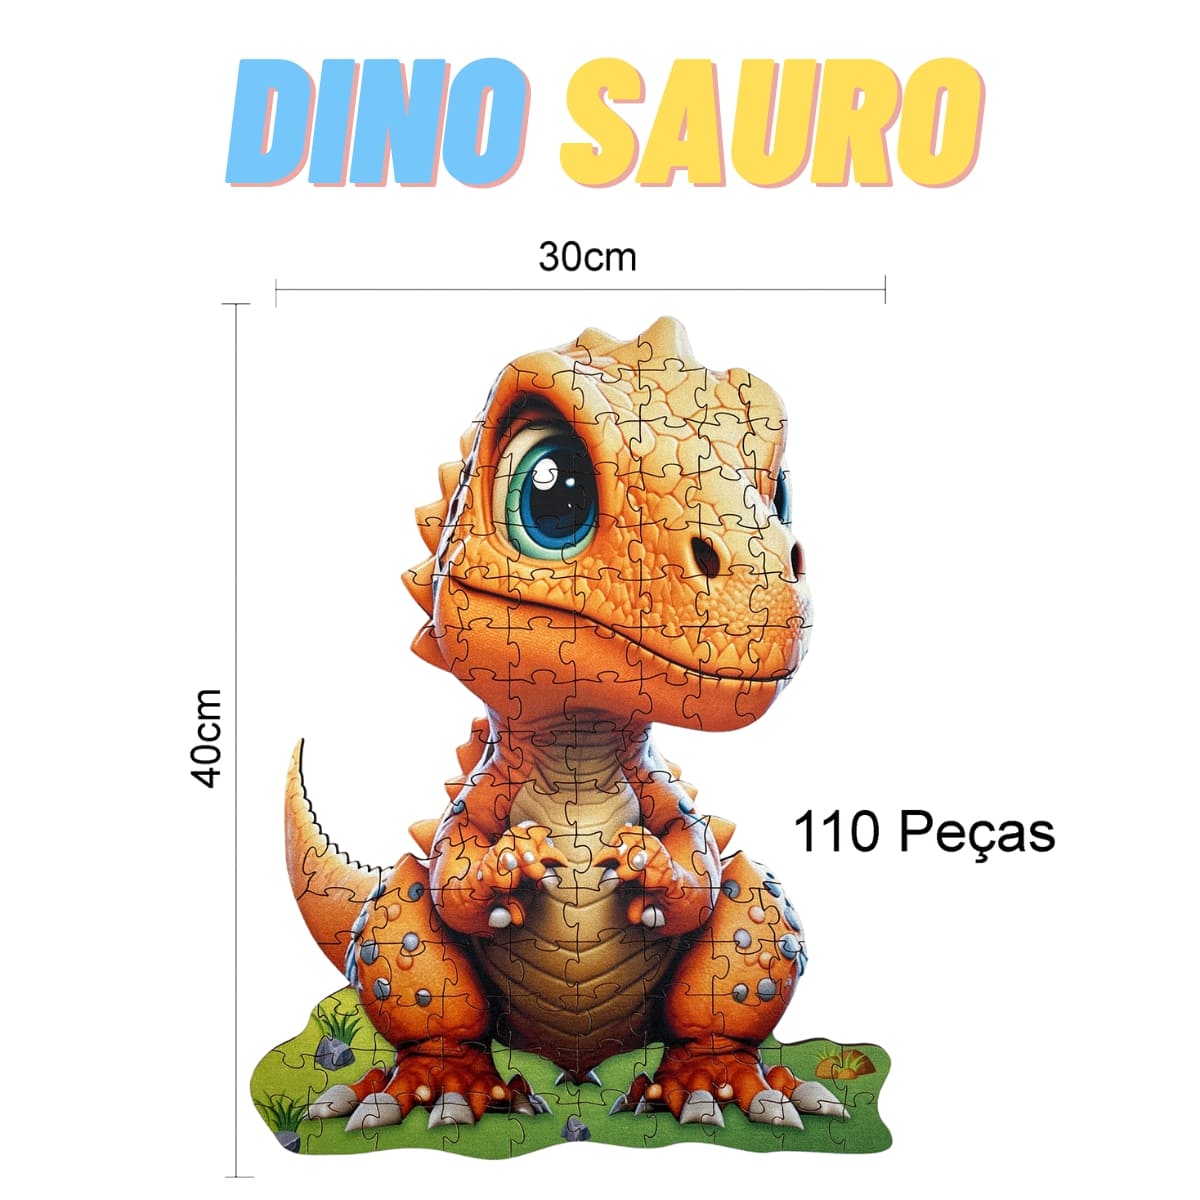 Quebra Cabeça; Dinossauros; Dinos